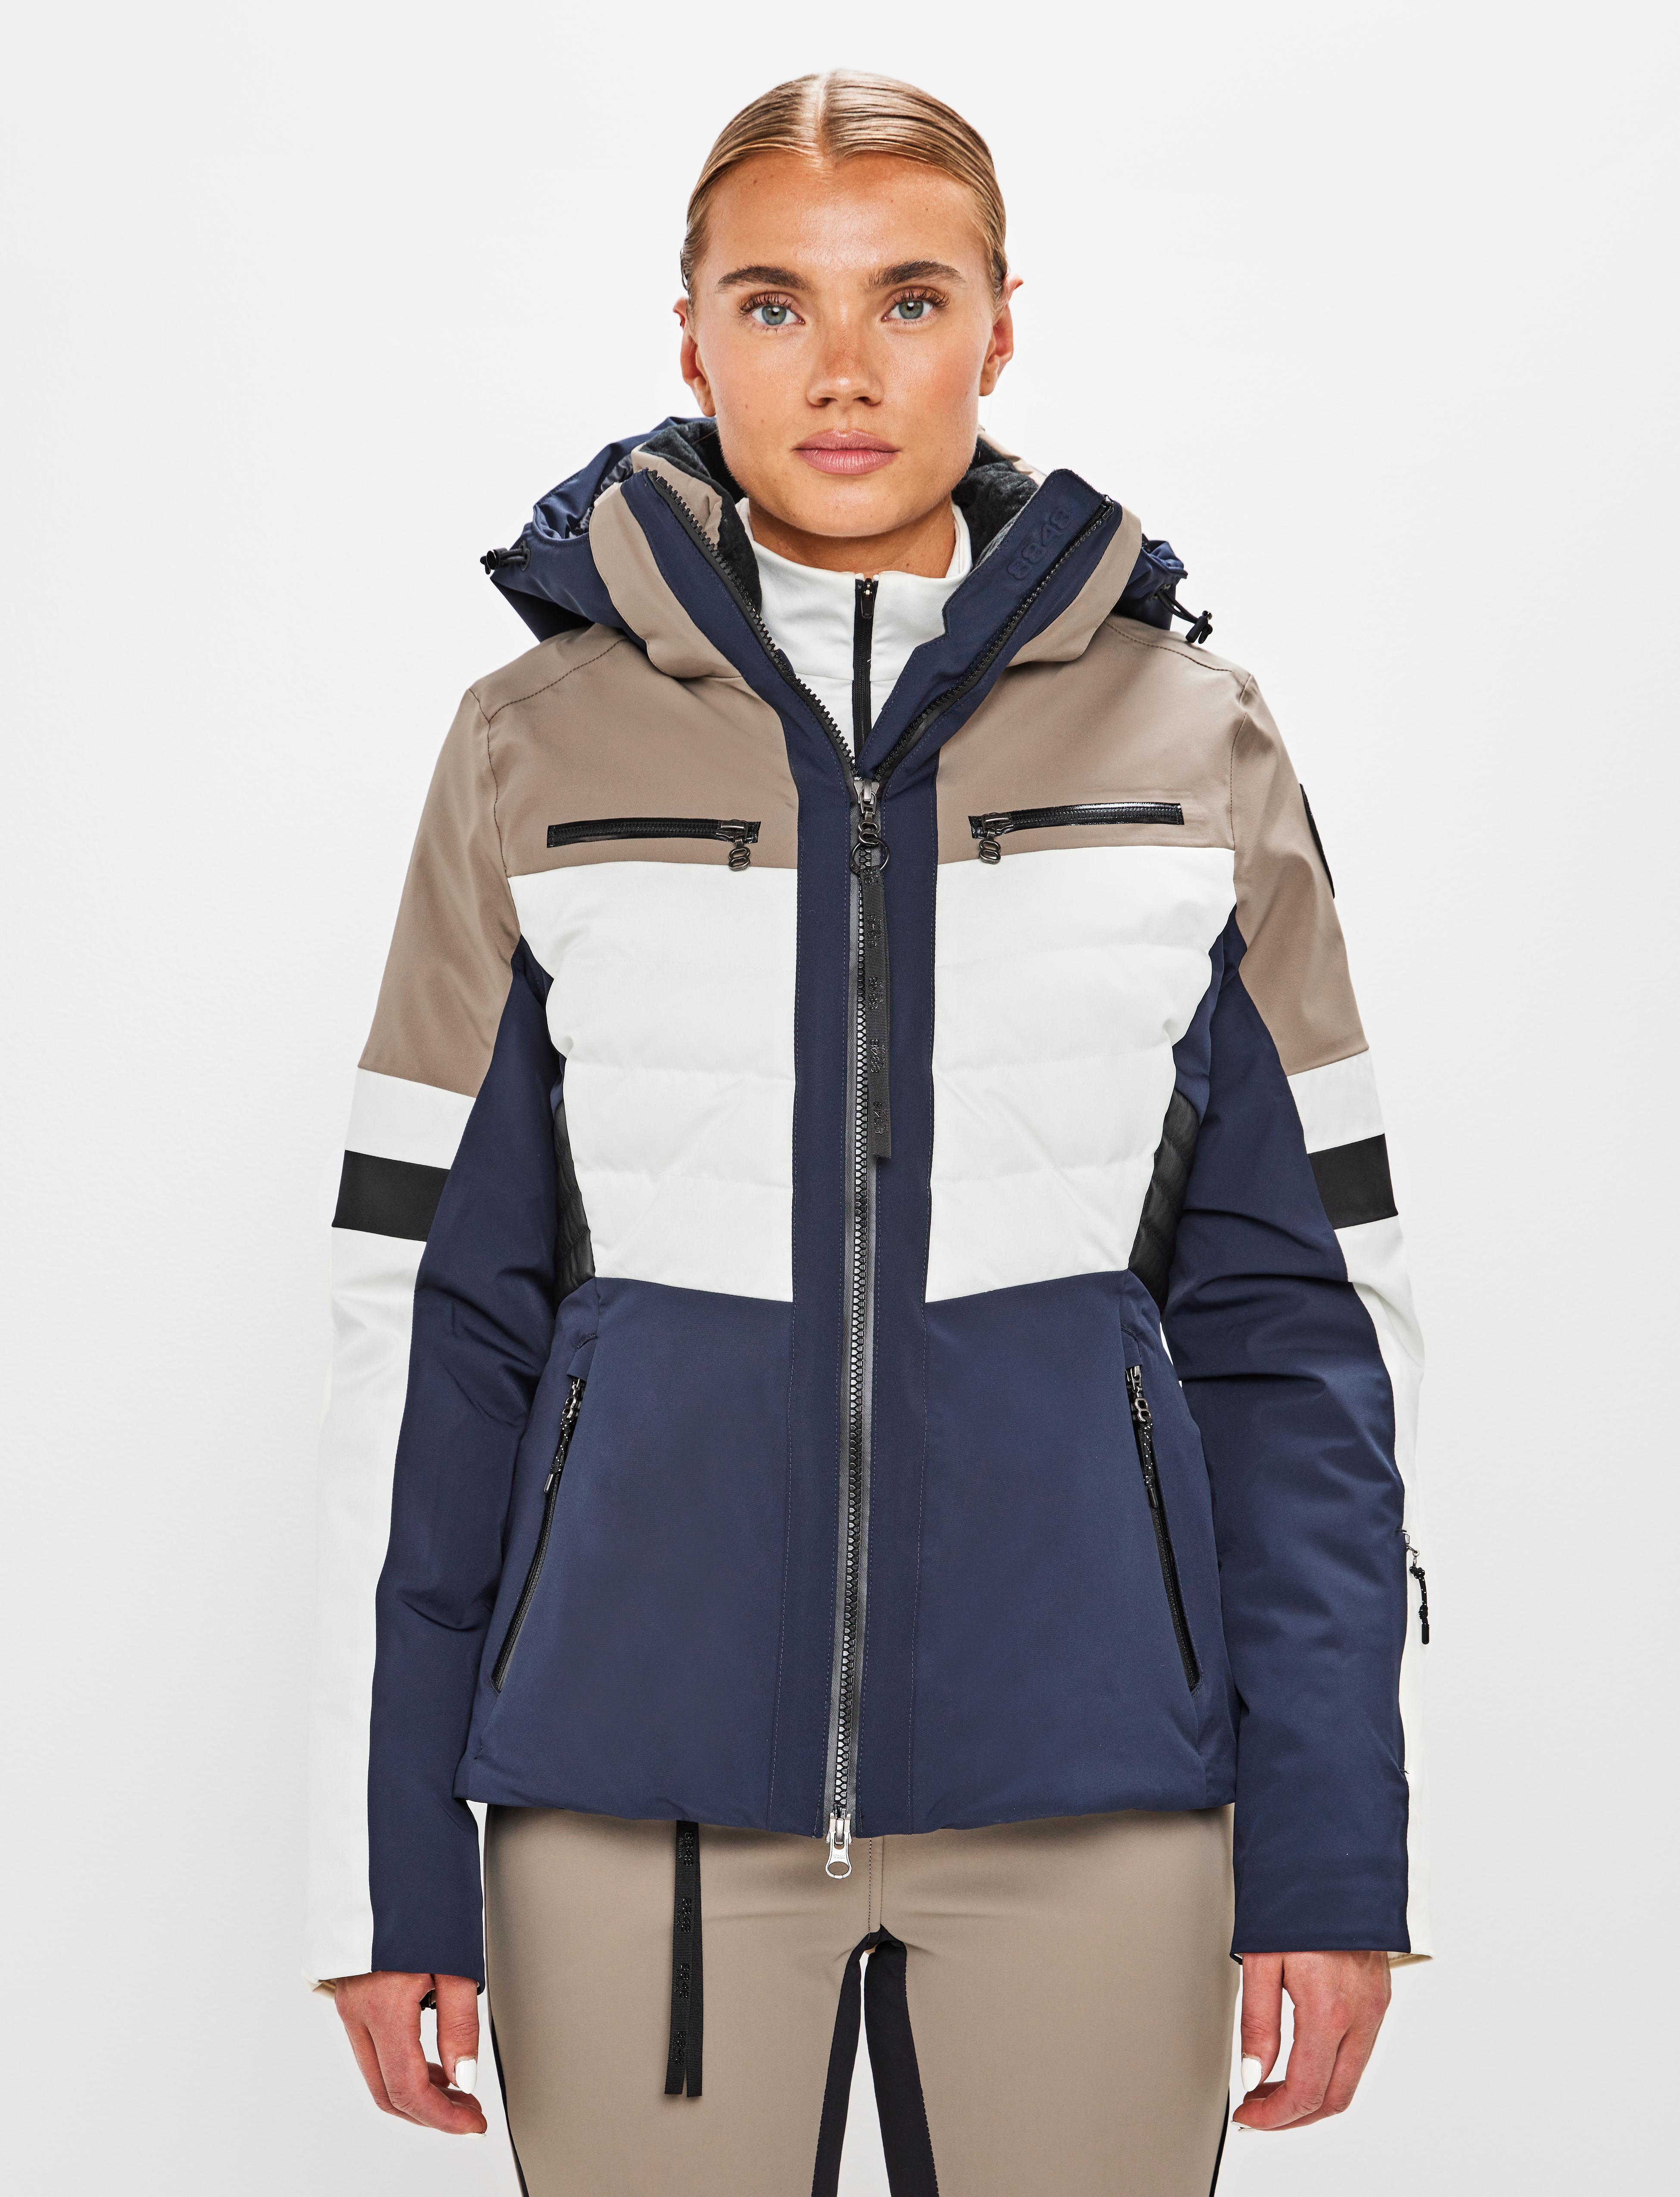 Zena W Jacket Fallen rock - Beige ski jacket women